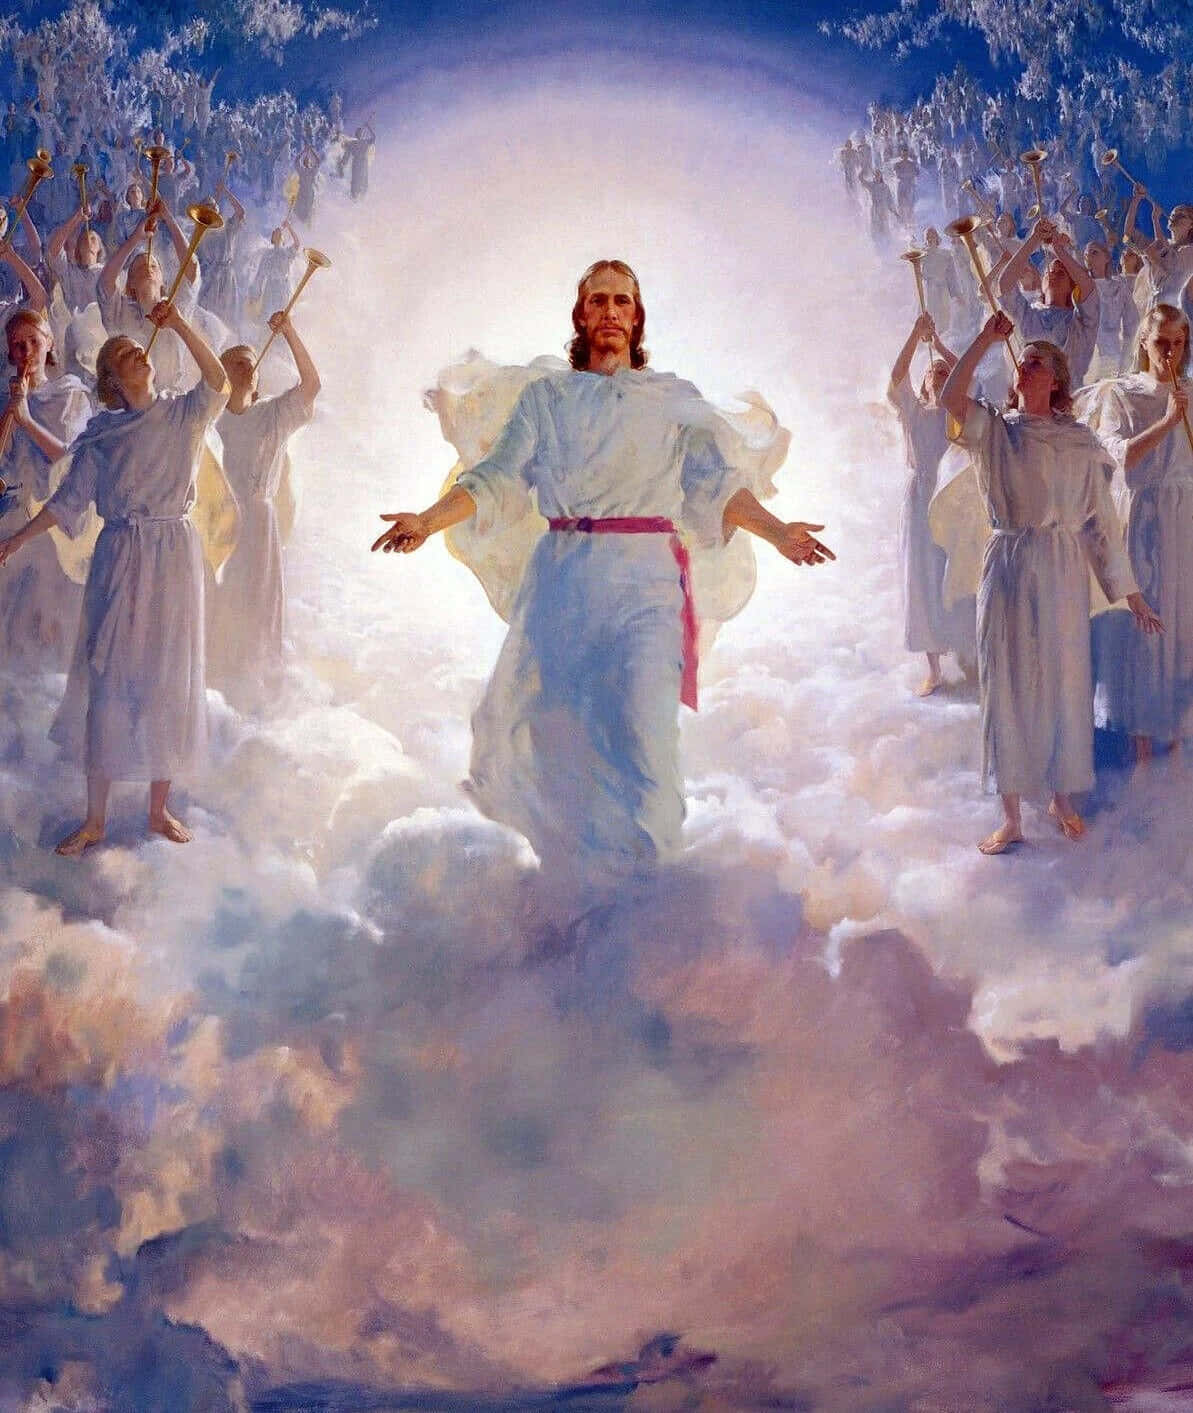 Jesus i Himlen, glæde sig sammen med englene. Wallpaper